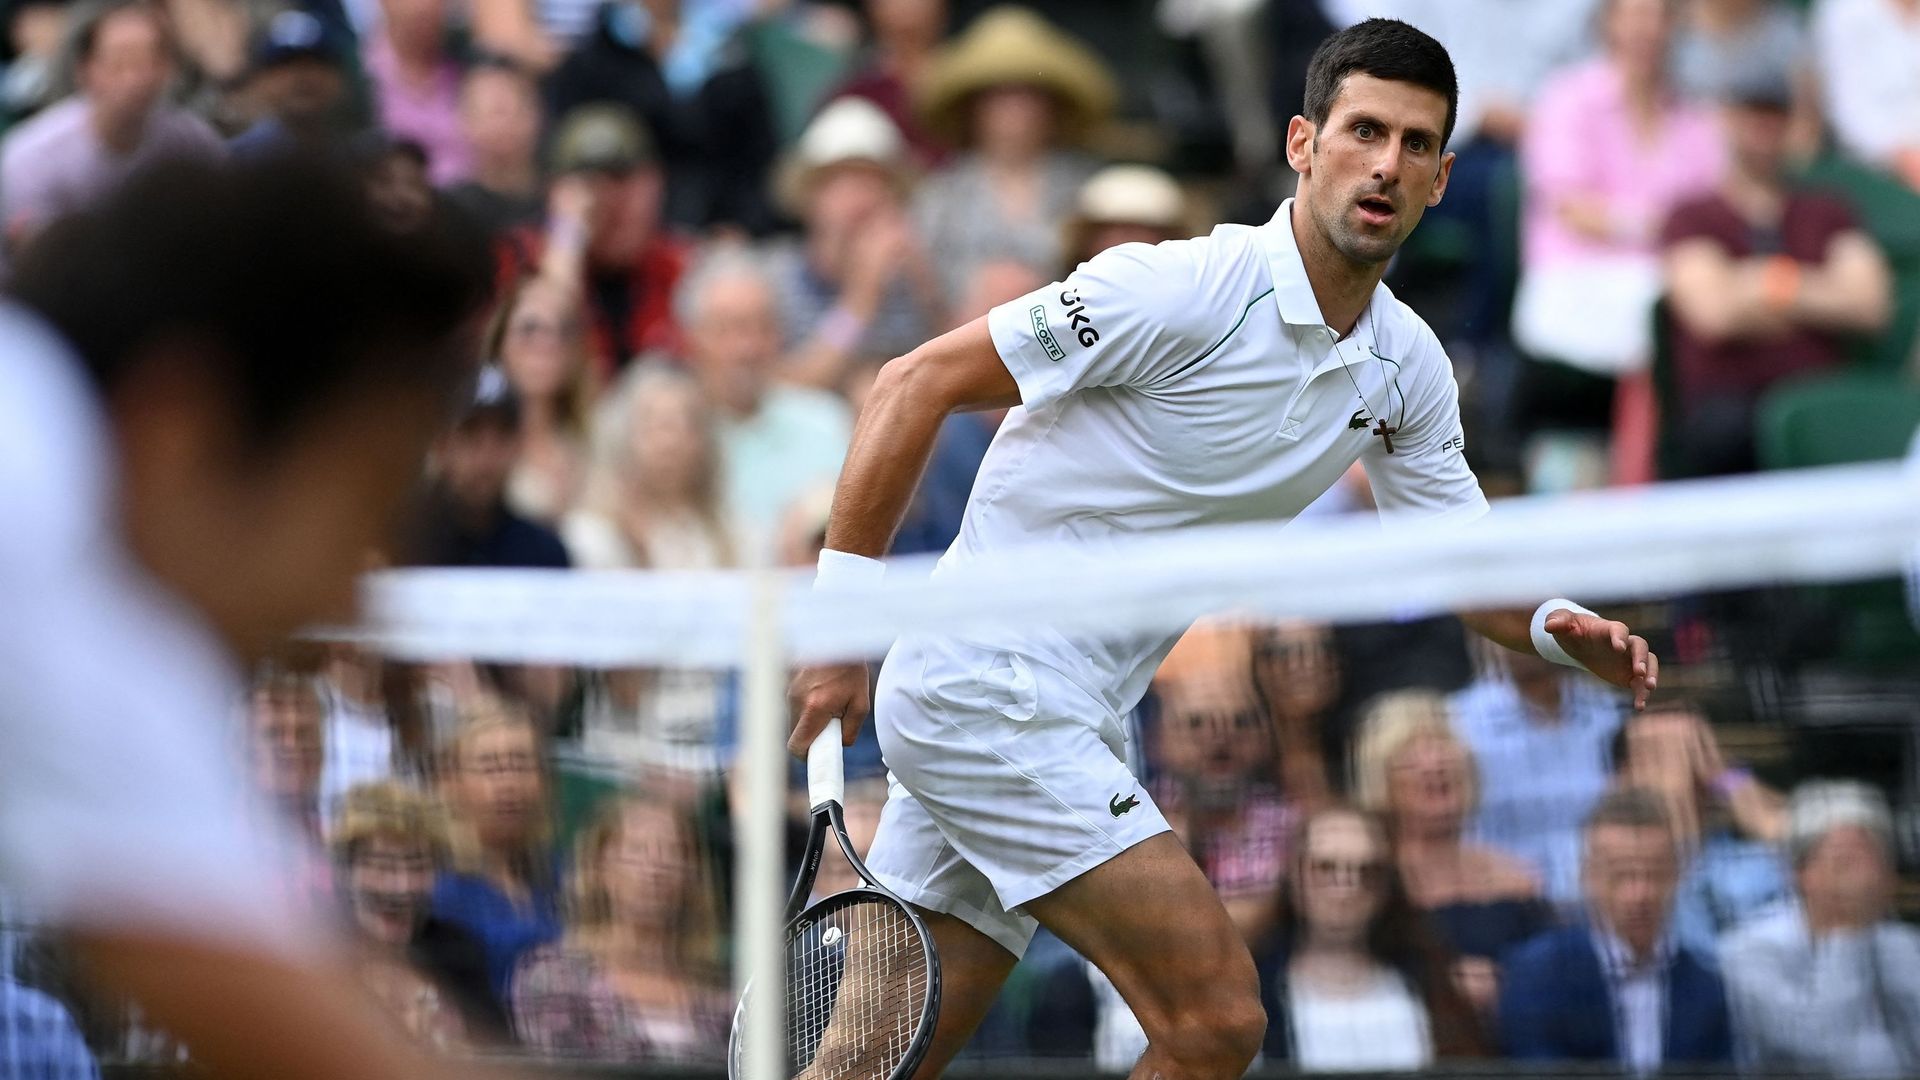 Djokovic file toujours vers son objectif, une victoire finale à Wimbledon